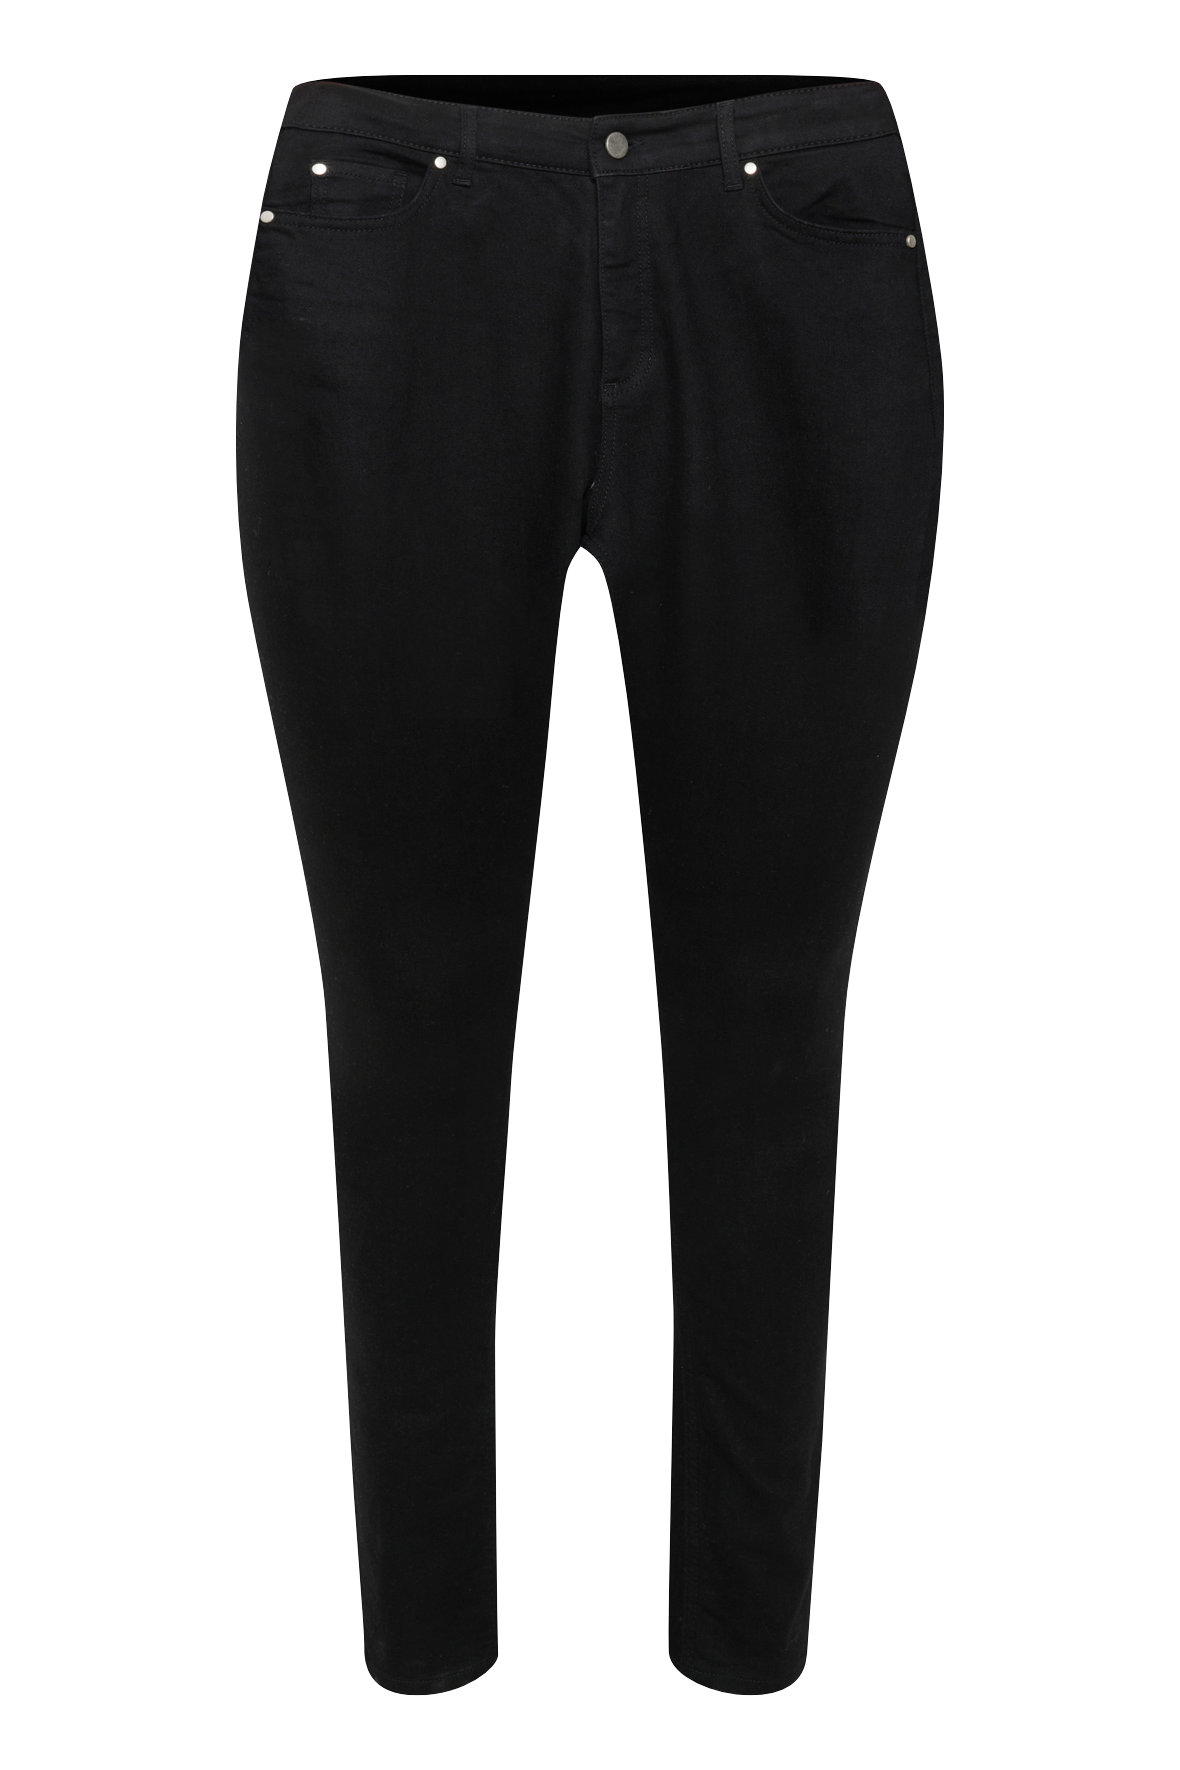 Tøj input melon Kaffe Curve kcLasa denim jeans i lækker sort farve med stræk - Hos Lohse